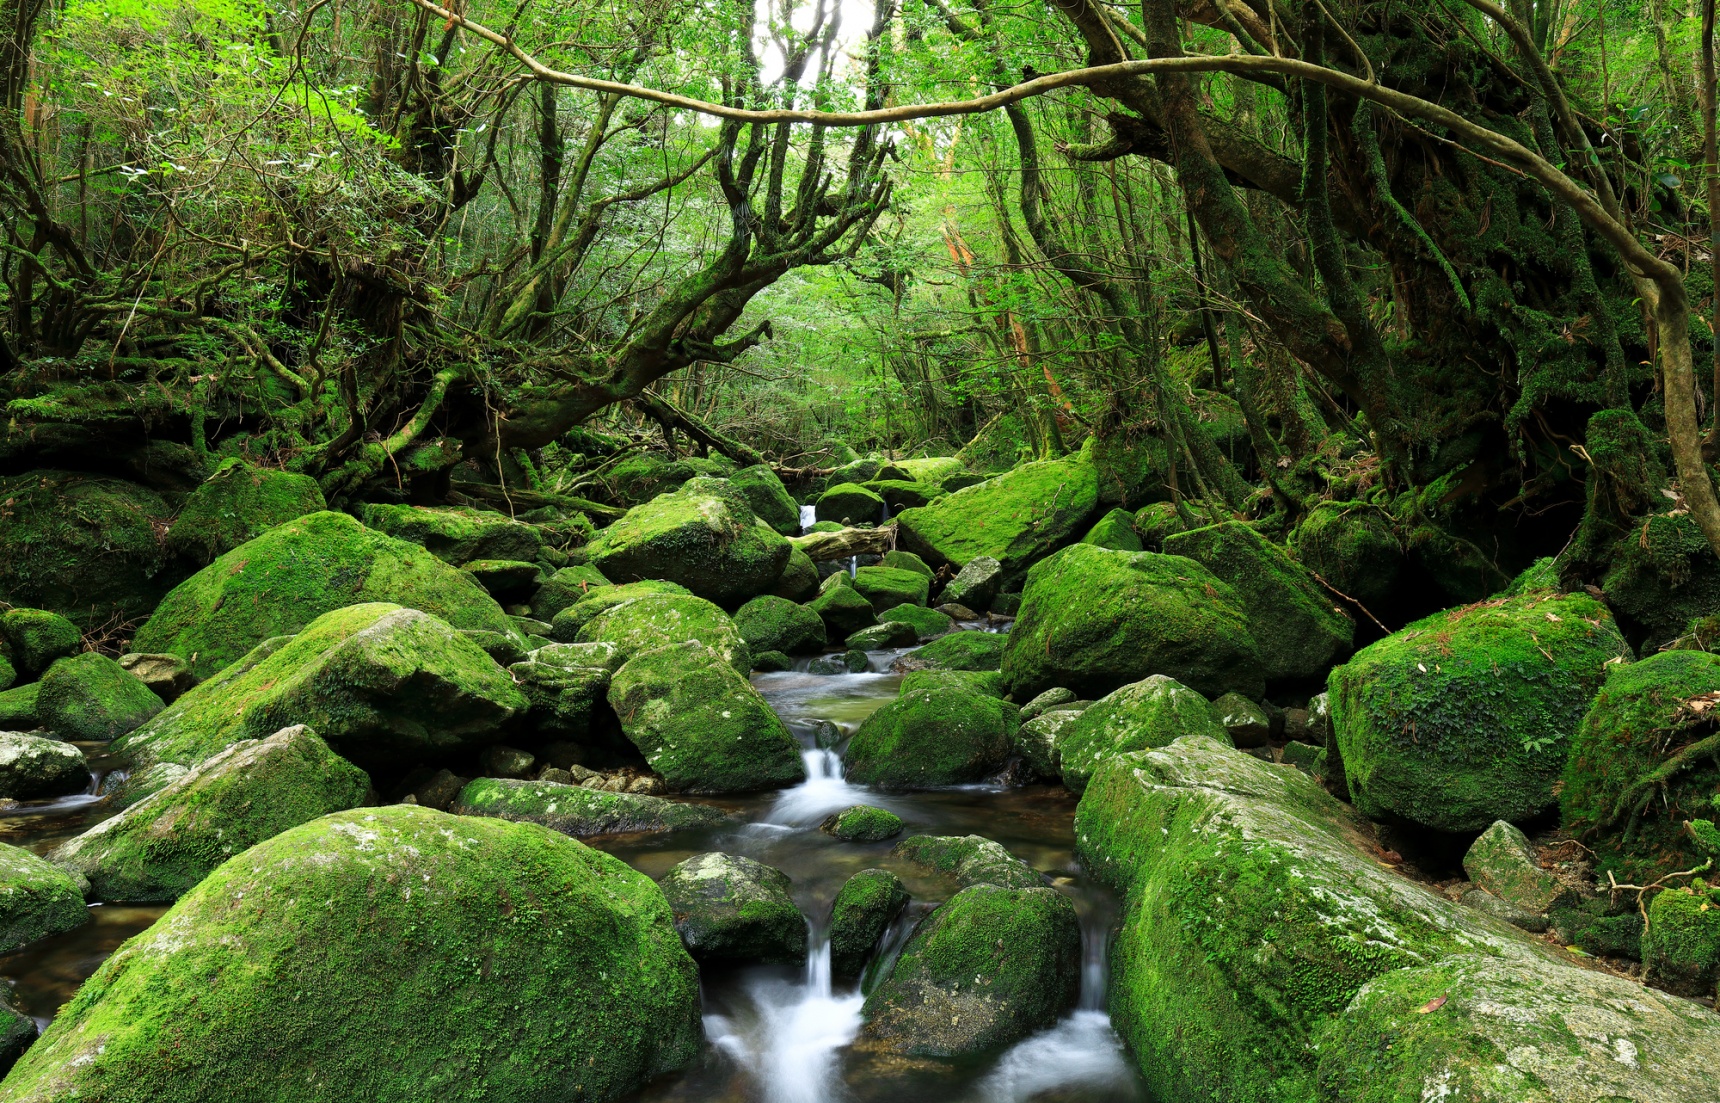 【鹿兒島自由行】屏住呼吸！到原始森林秘境「屋久島」擁抱自然享受最美的感動